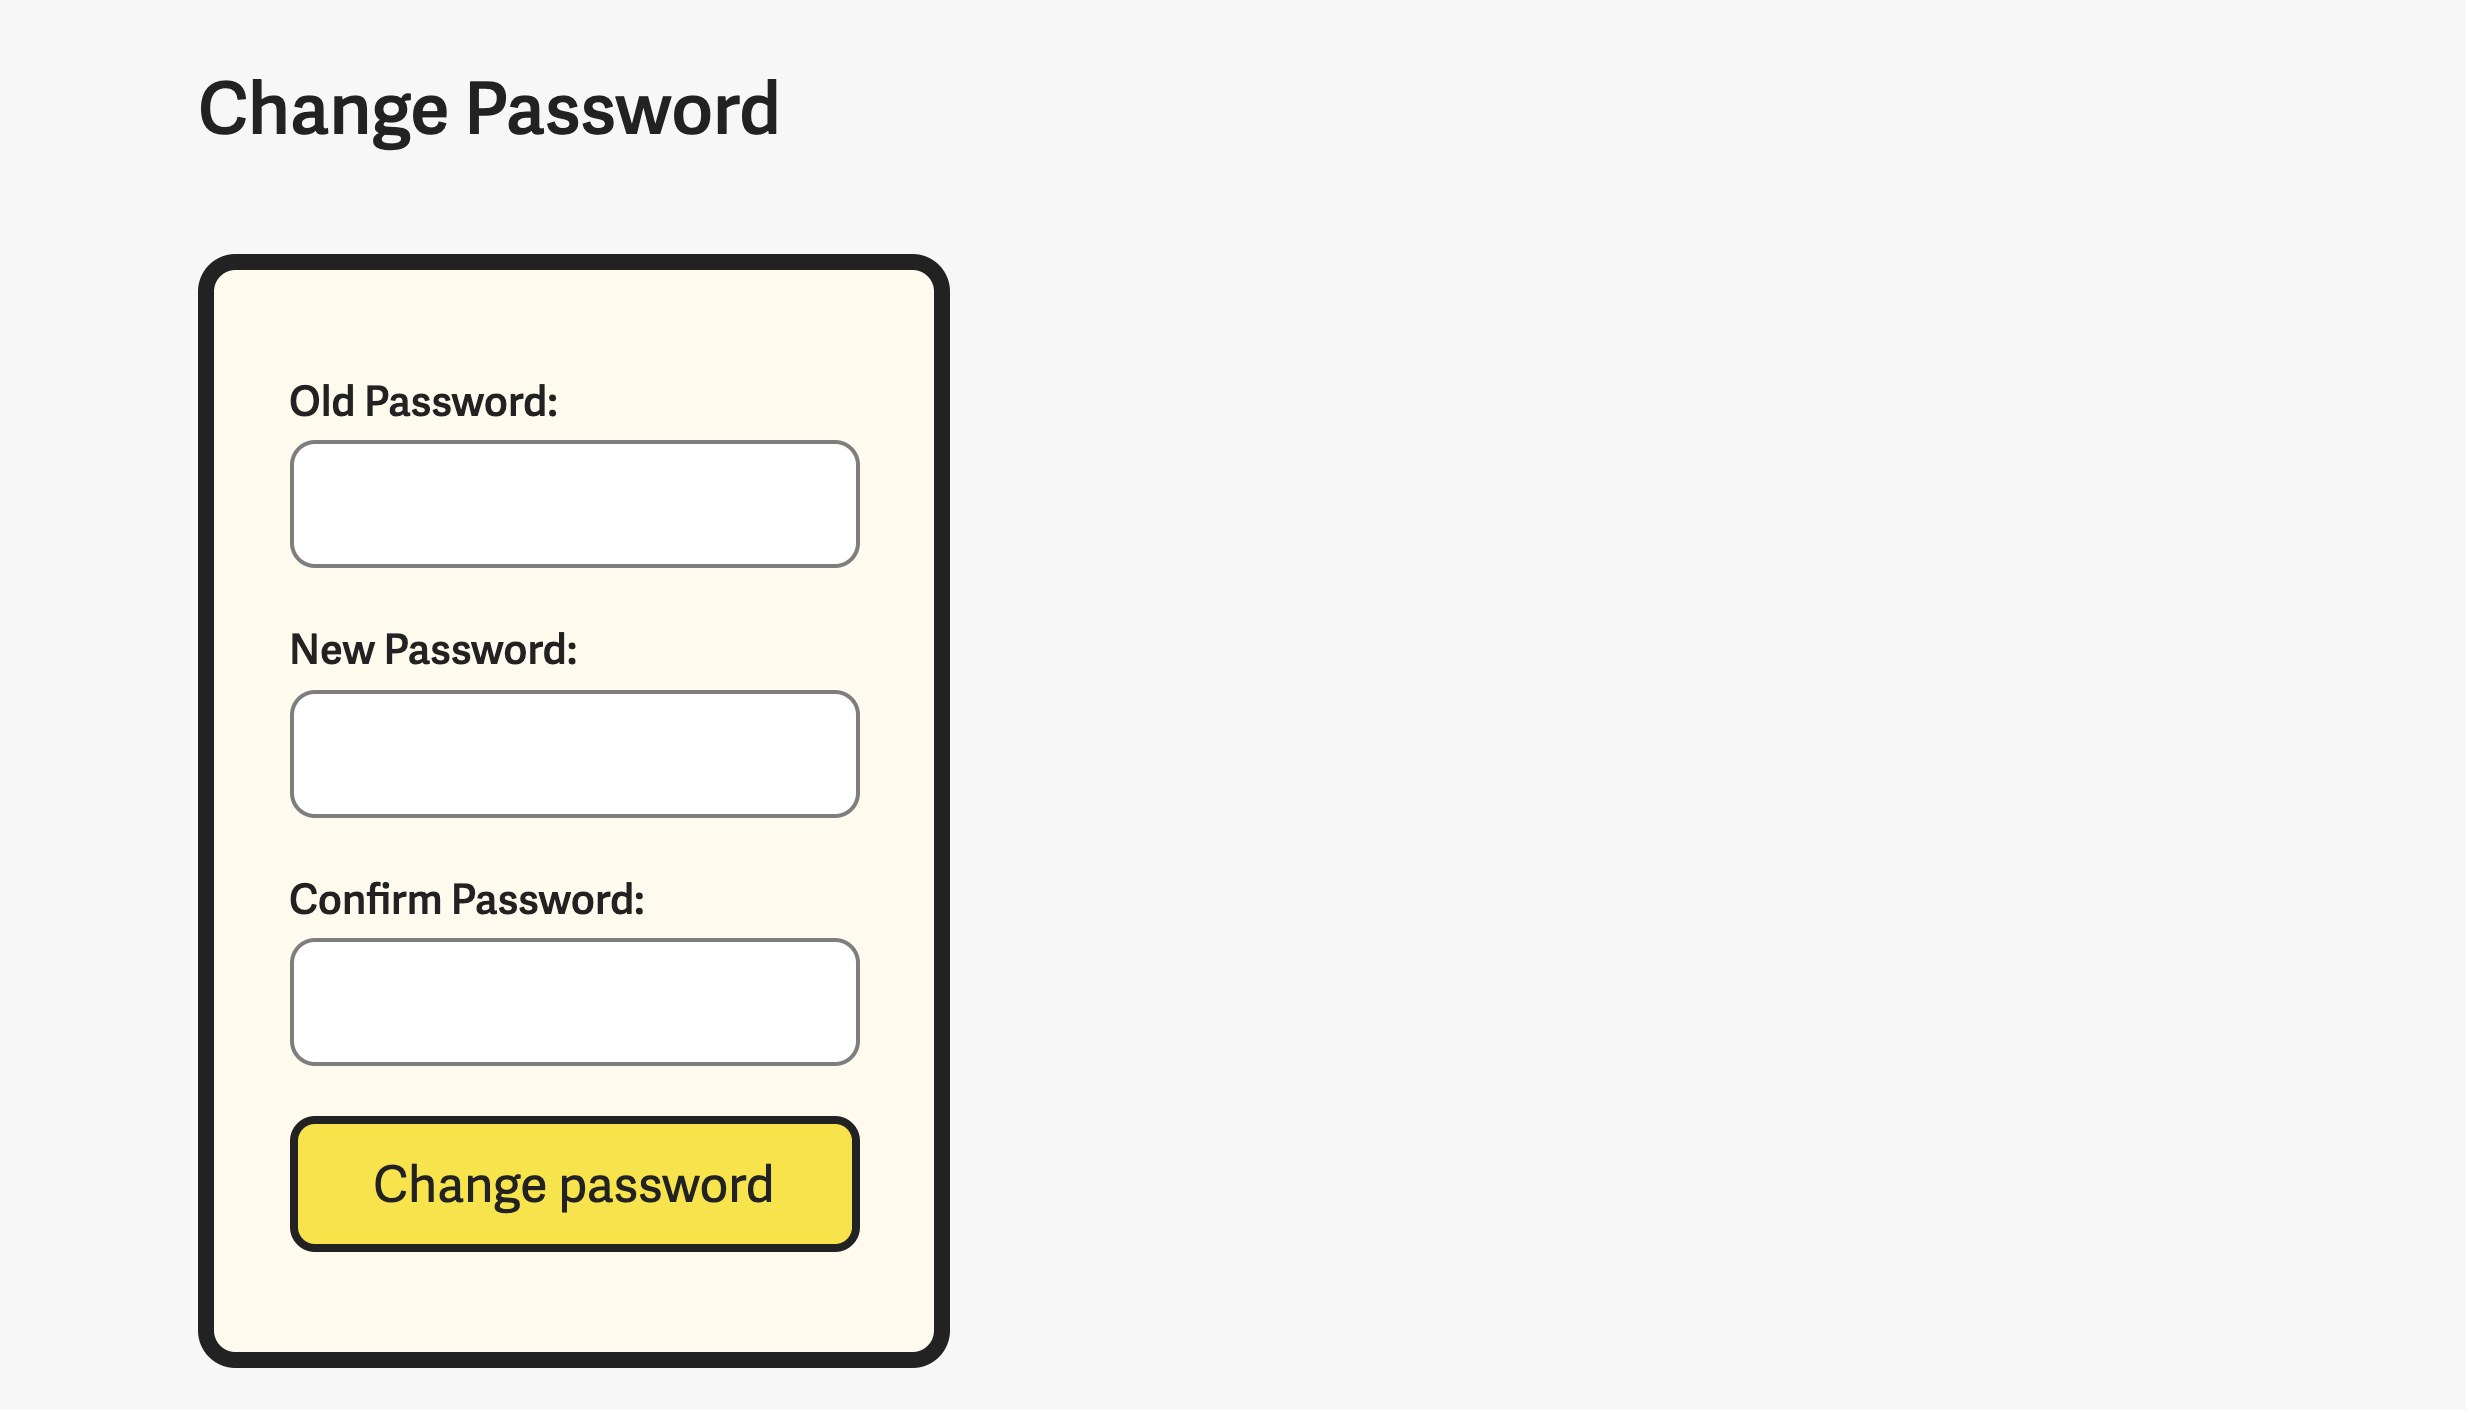 Password fields in a single column.